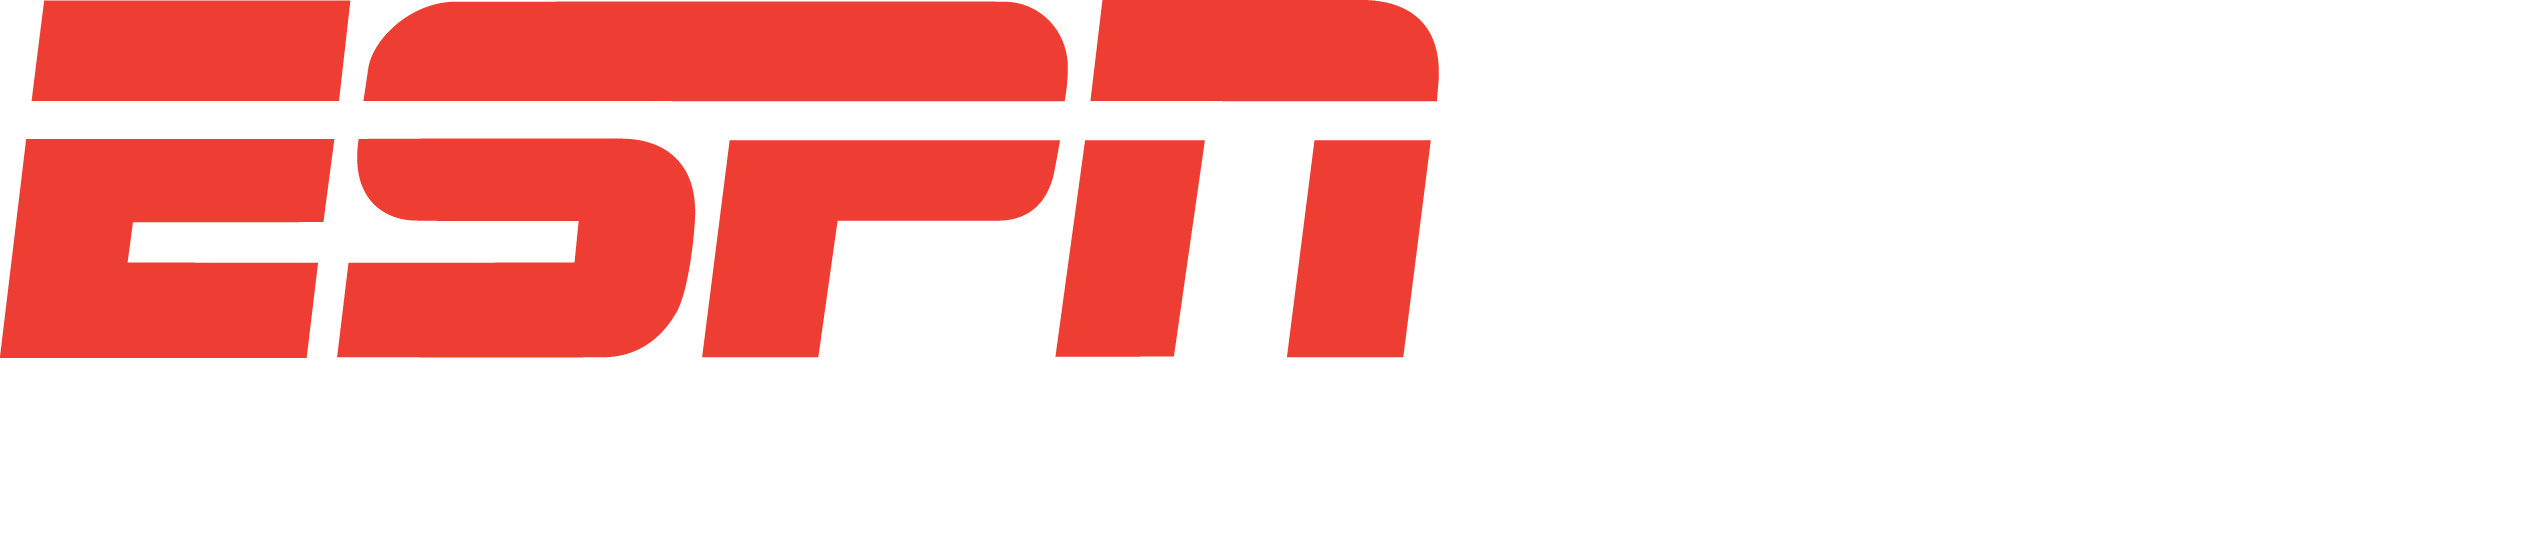 sportscenter logo png